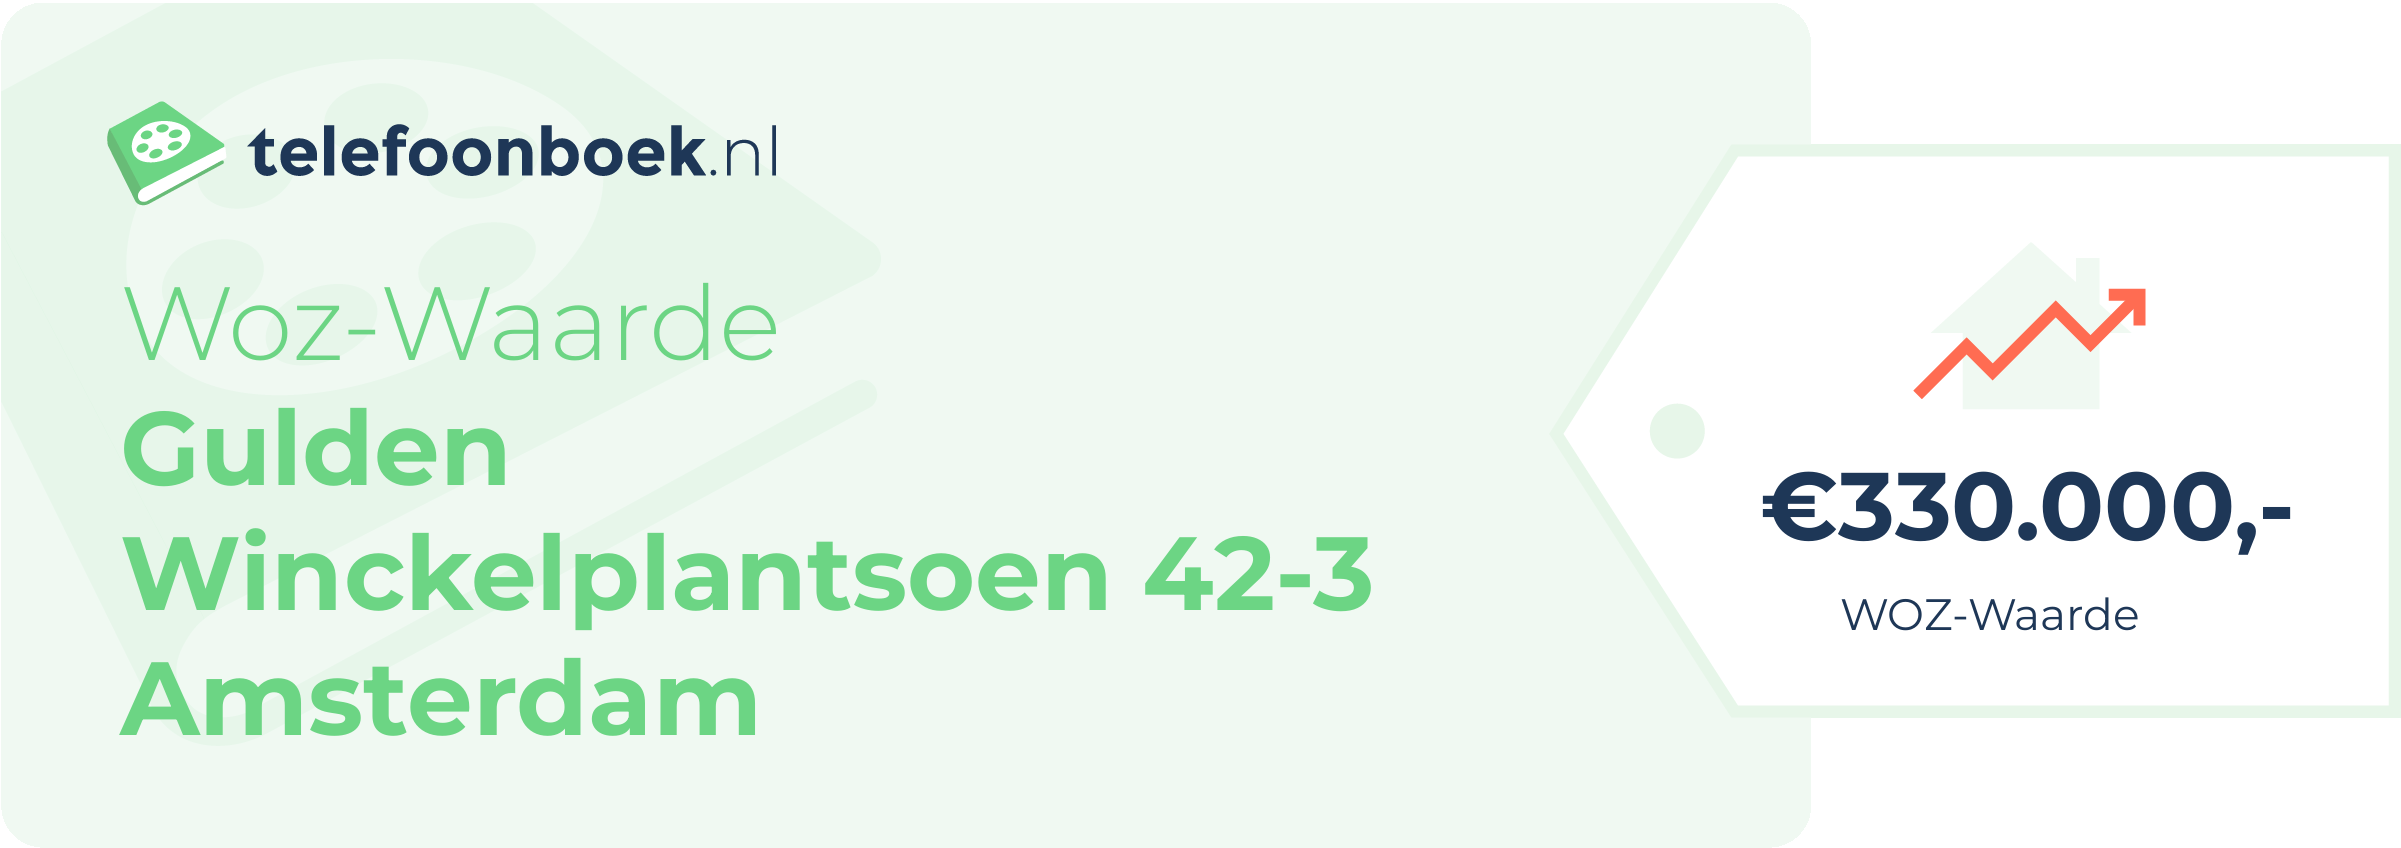 WOZ-waarde Gulden Winckelplantsoen 42-3 Amsterdam